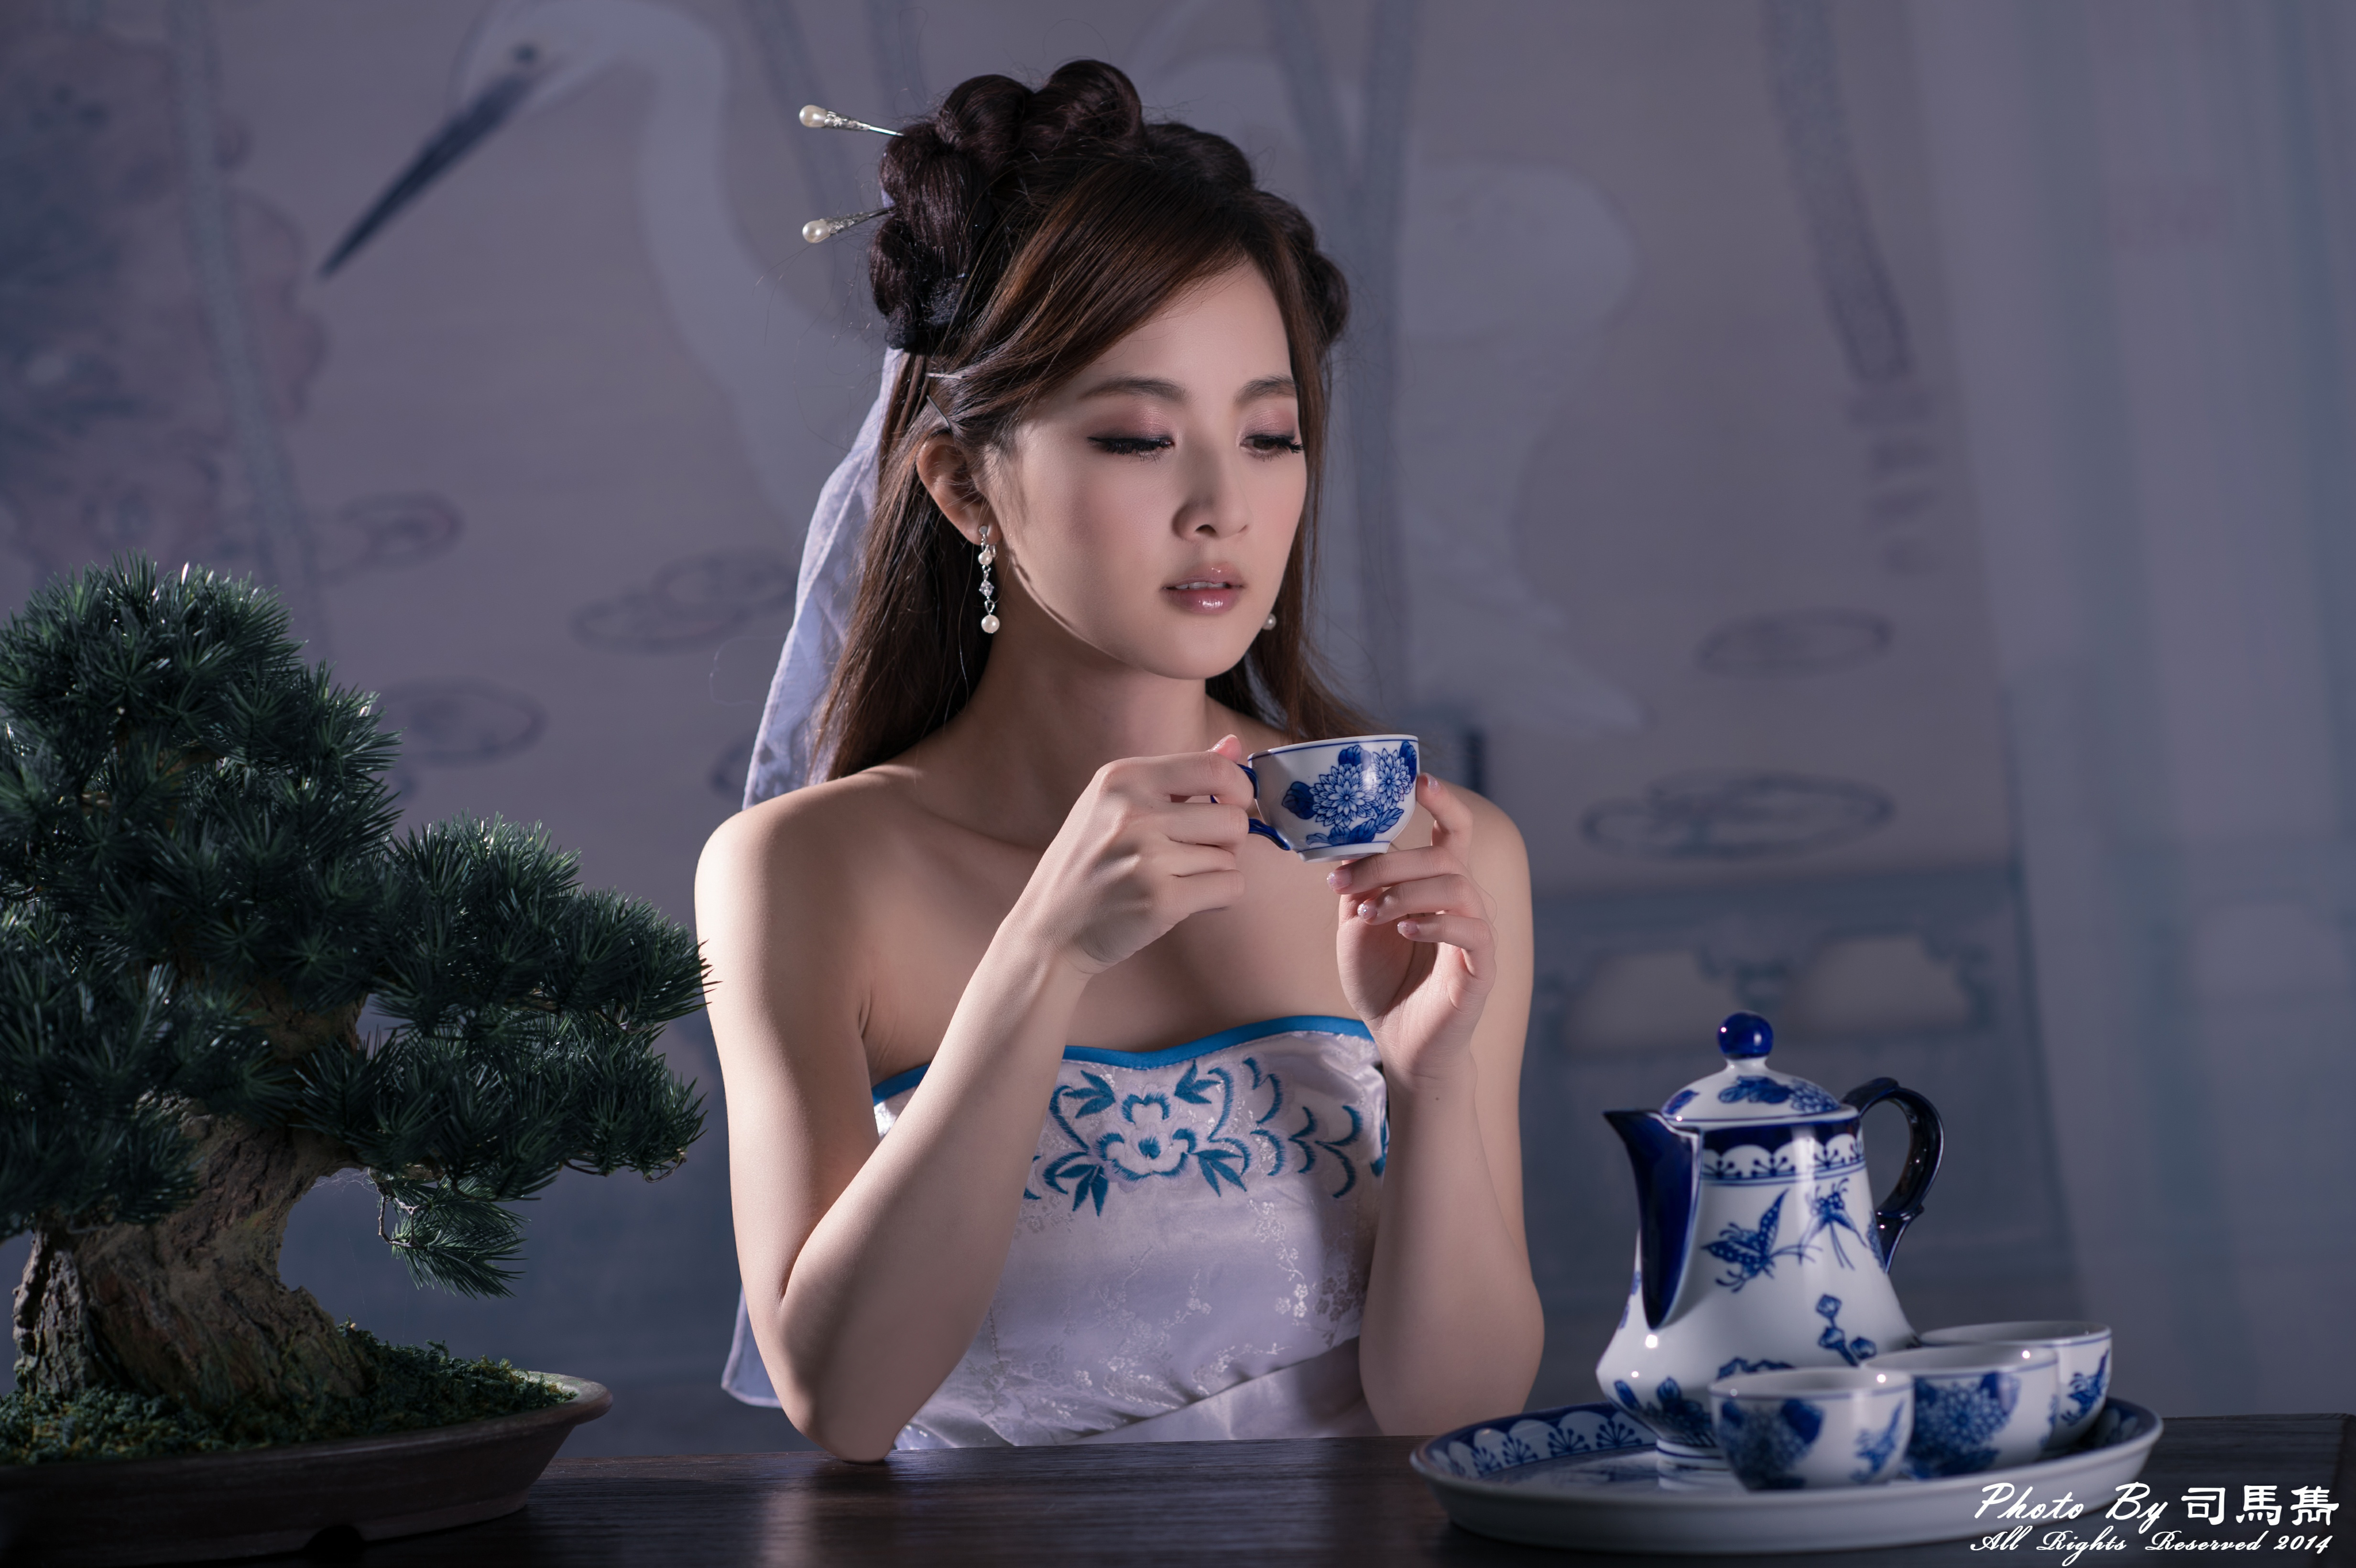 women, mikako zhang kaijie, asian, bonsai, cup, dress, hairpin, hair dress, tea set